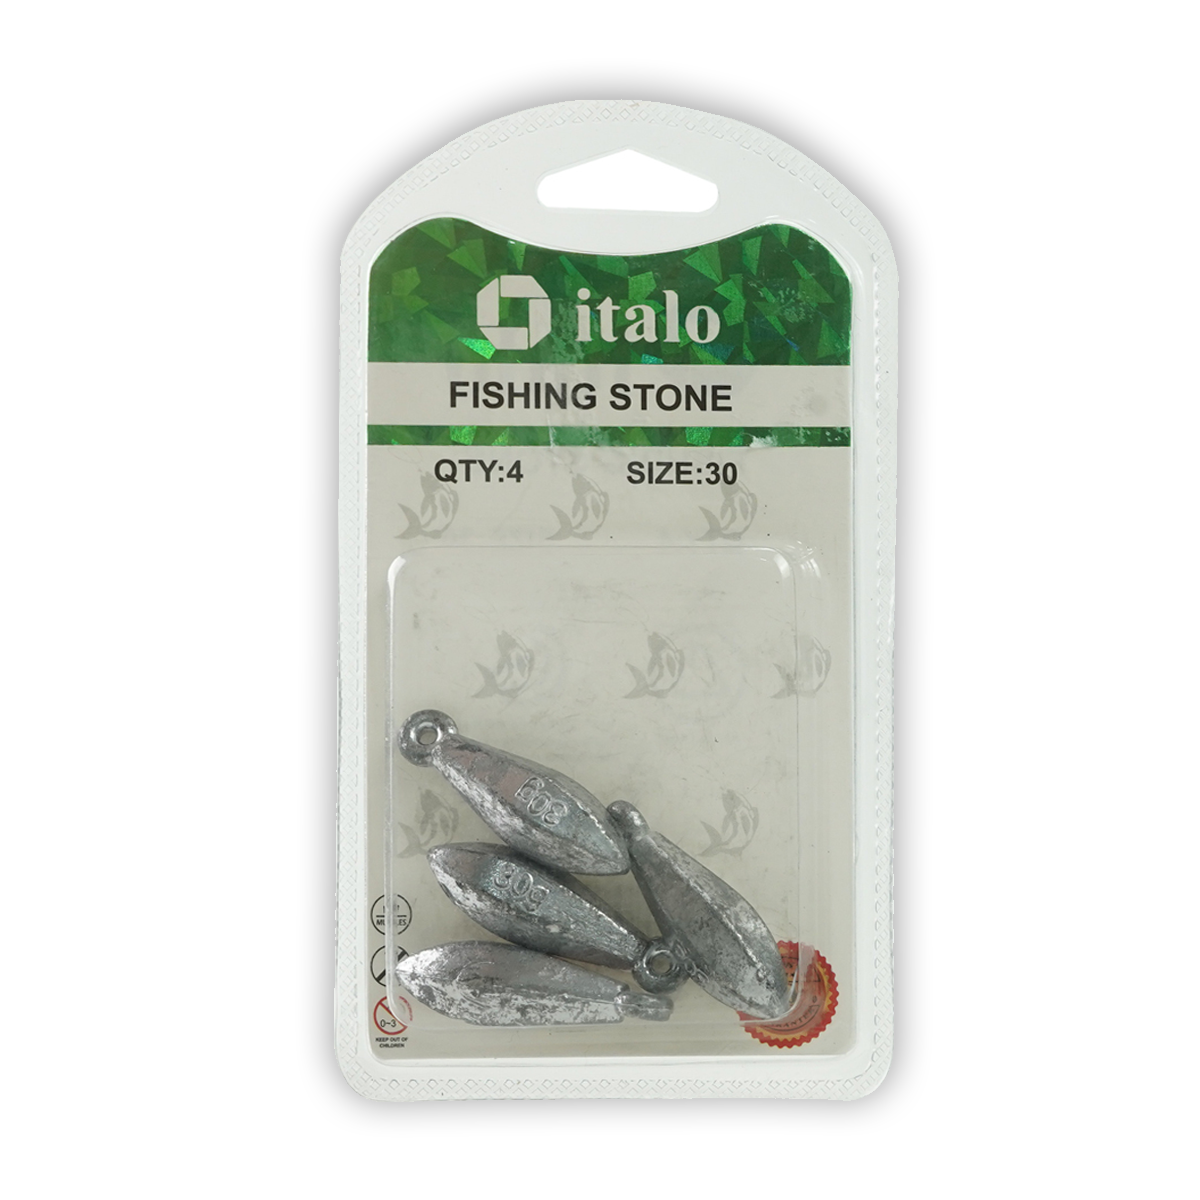 Fishing Stone Round Shape Sinker Pack of 6pcs - Size 20 - Italo